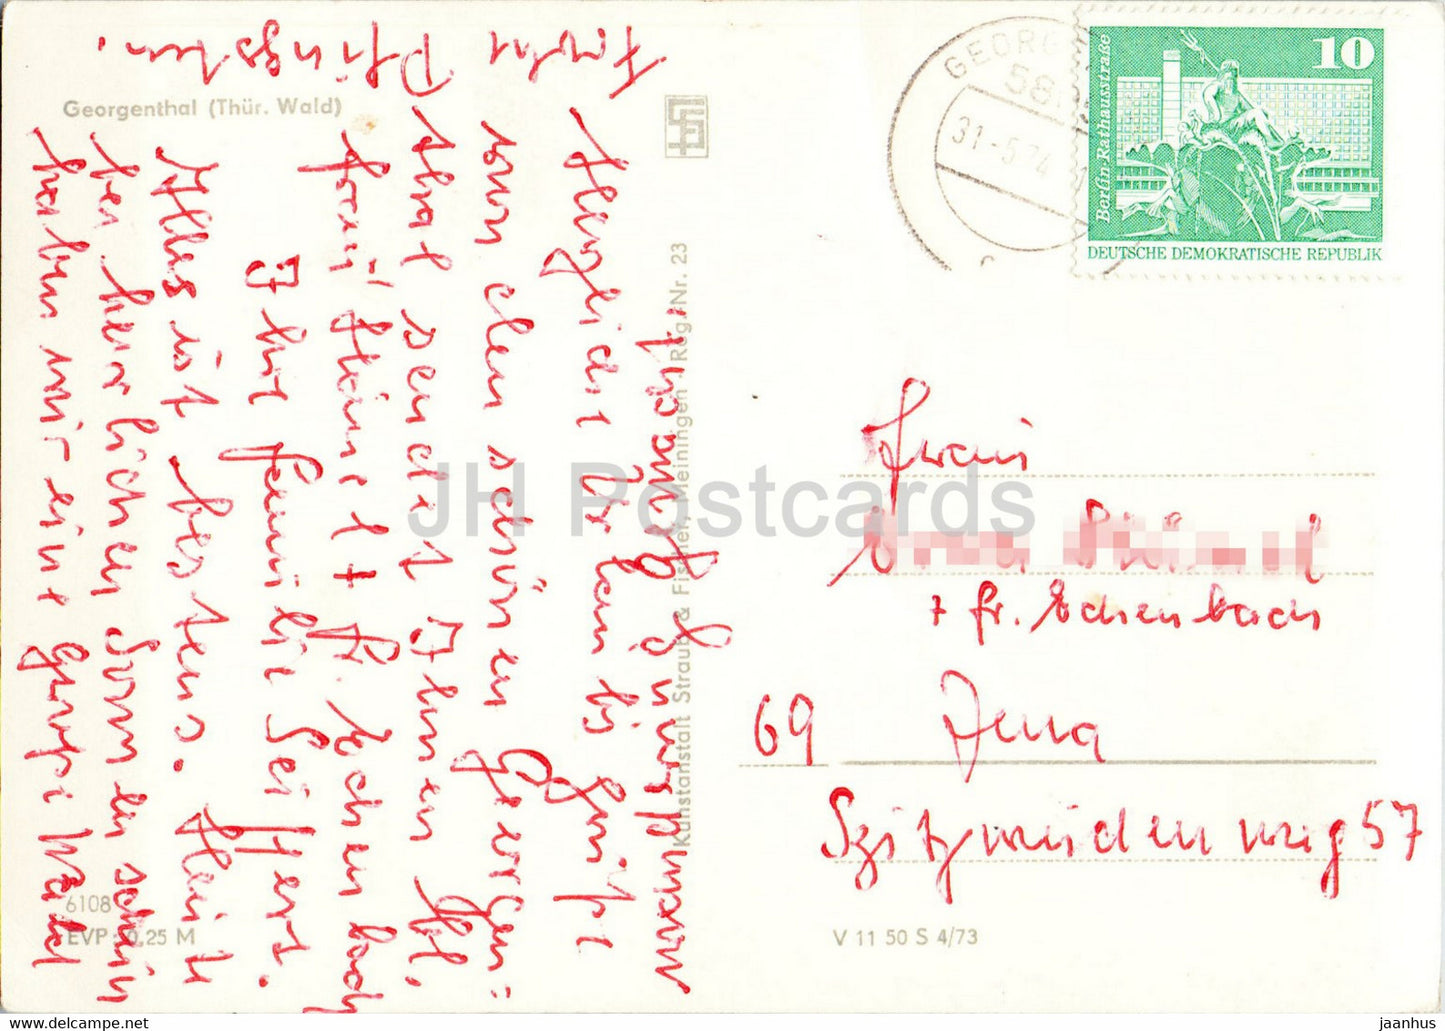 Georgenthal - Thur Wald - alte Postkarte - 1974 - Deutschland DDR - gebraucht